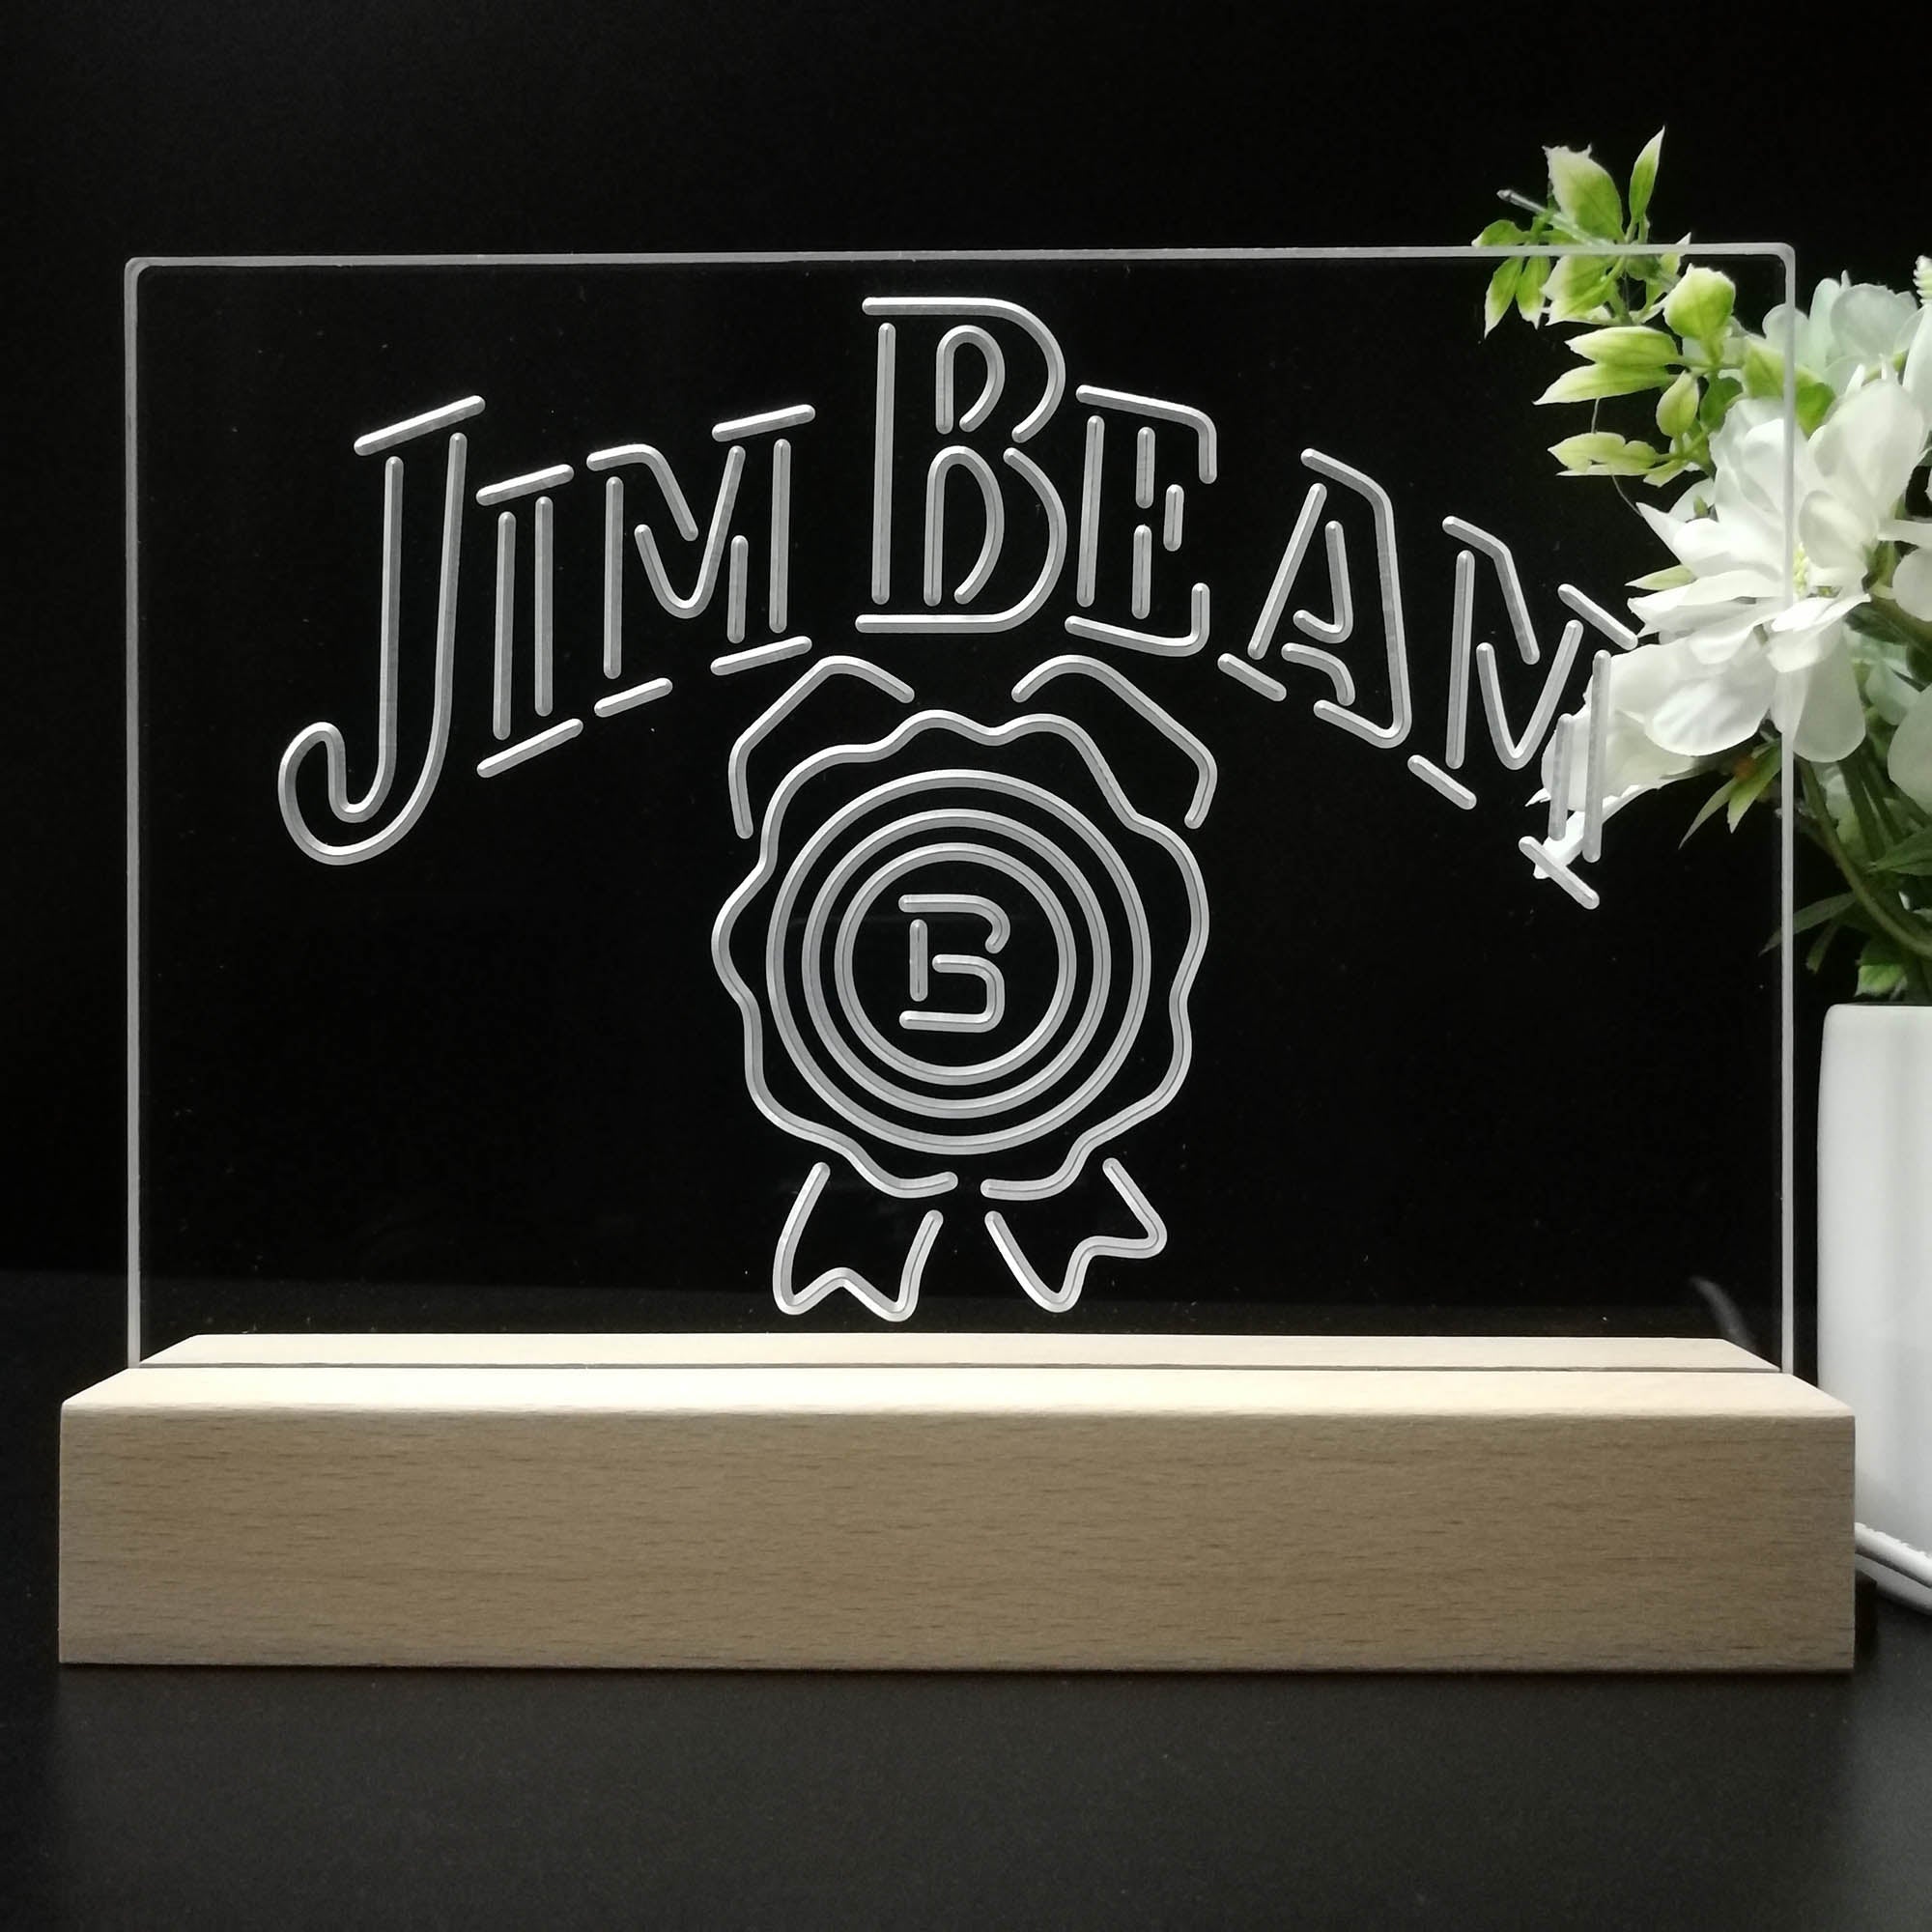 Jim Beam Beer Pub Neon Sign Pub Bar Lamp